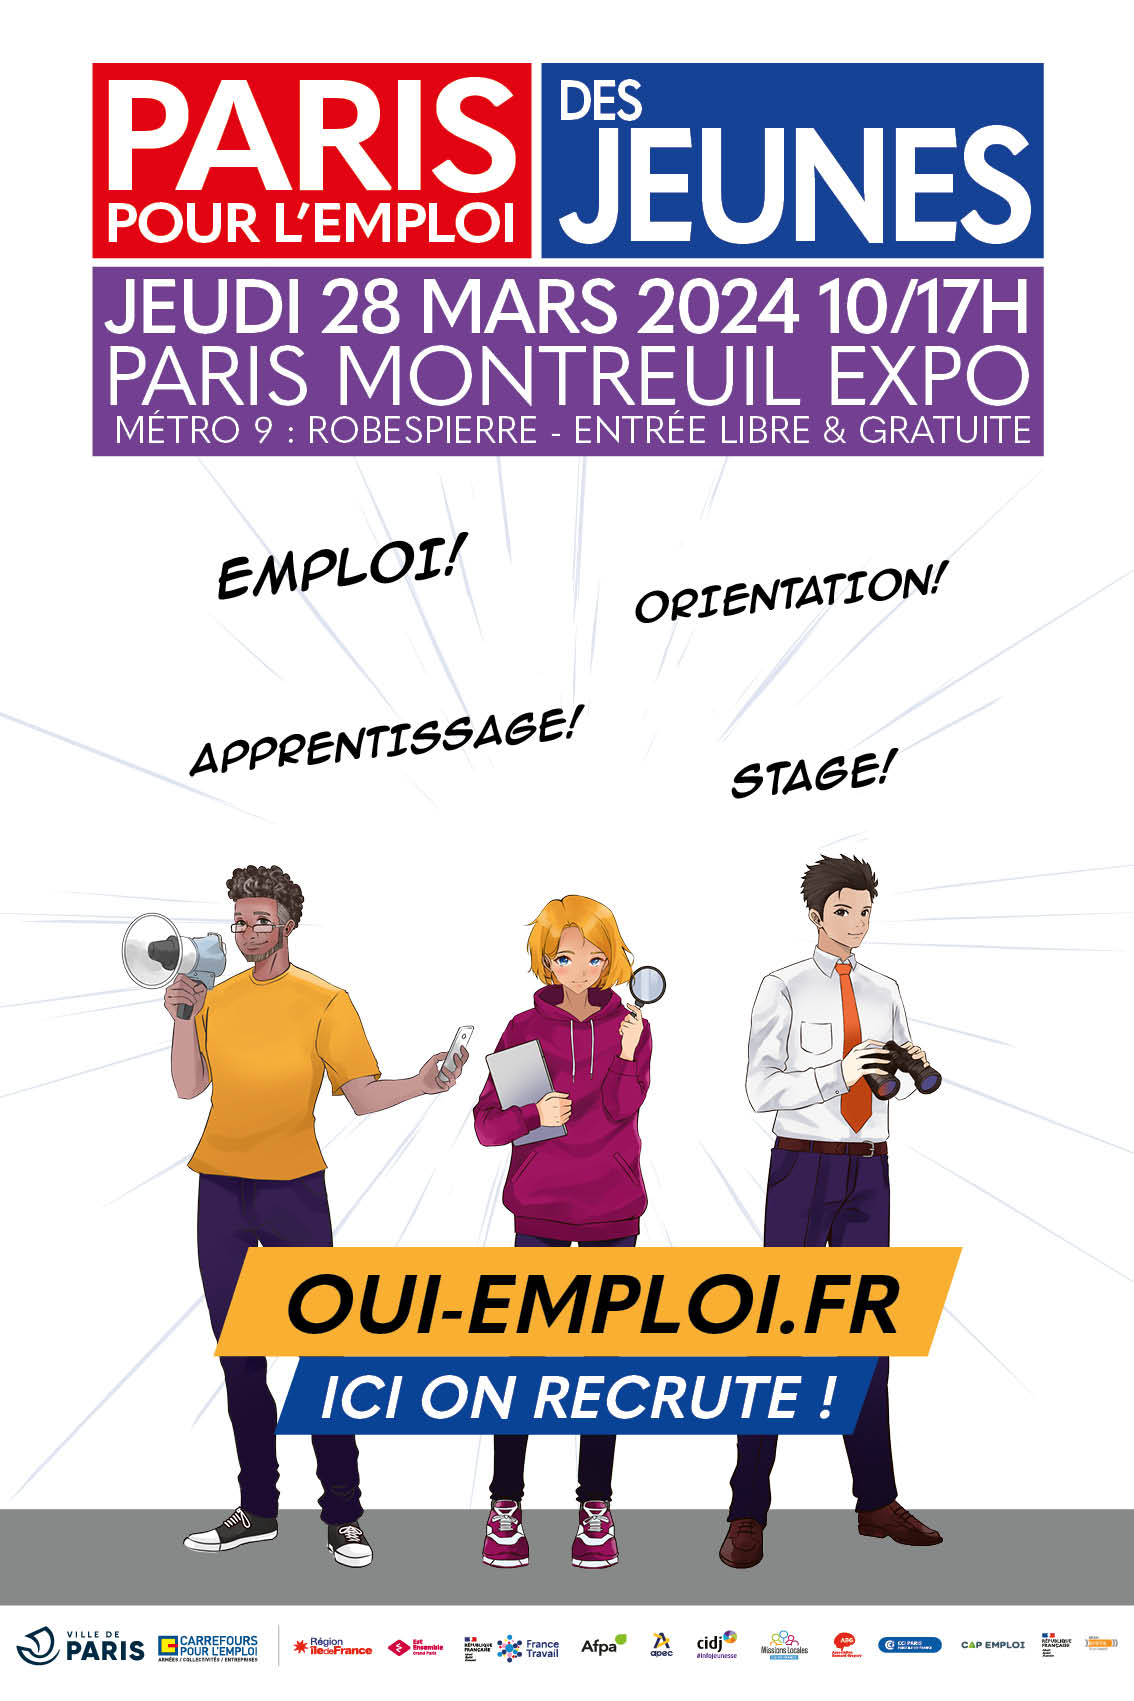 Paris pour l'emploi des jeunes 2024 